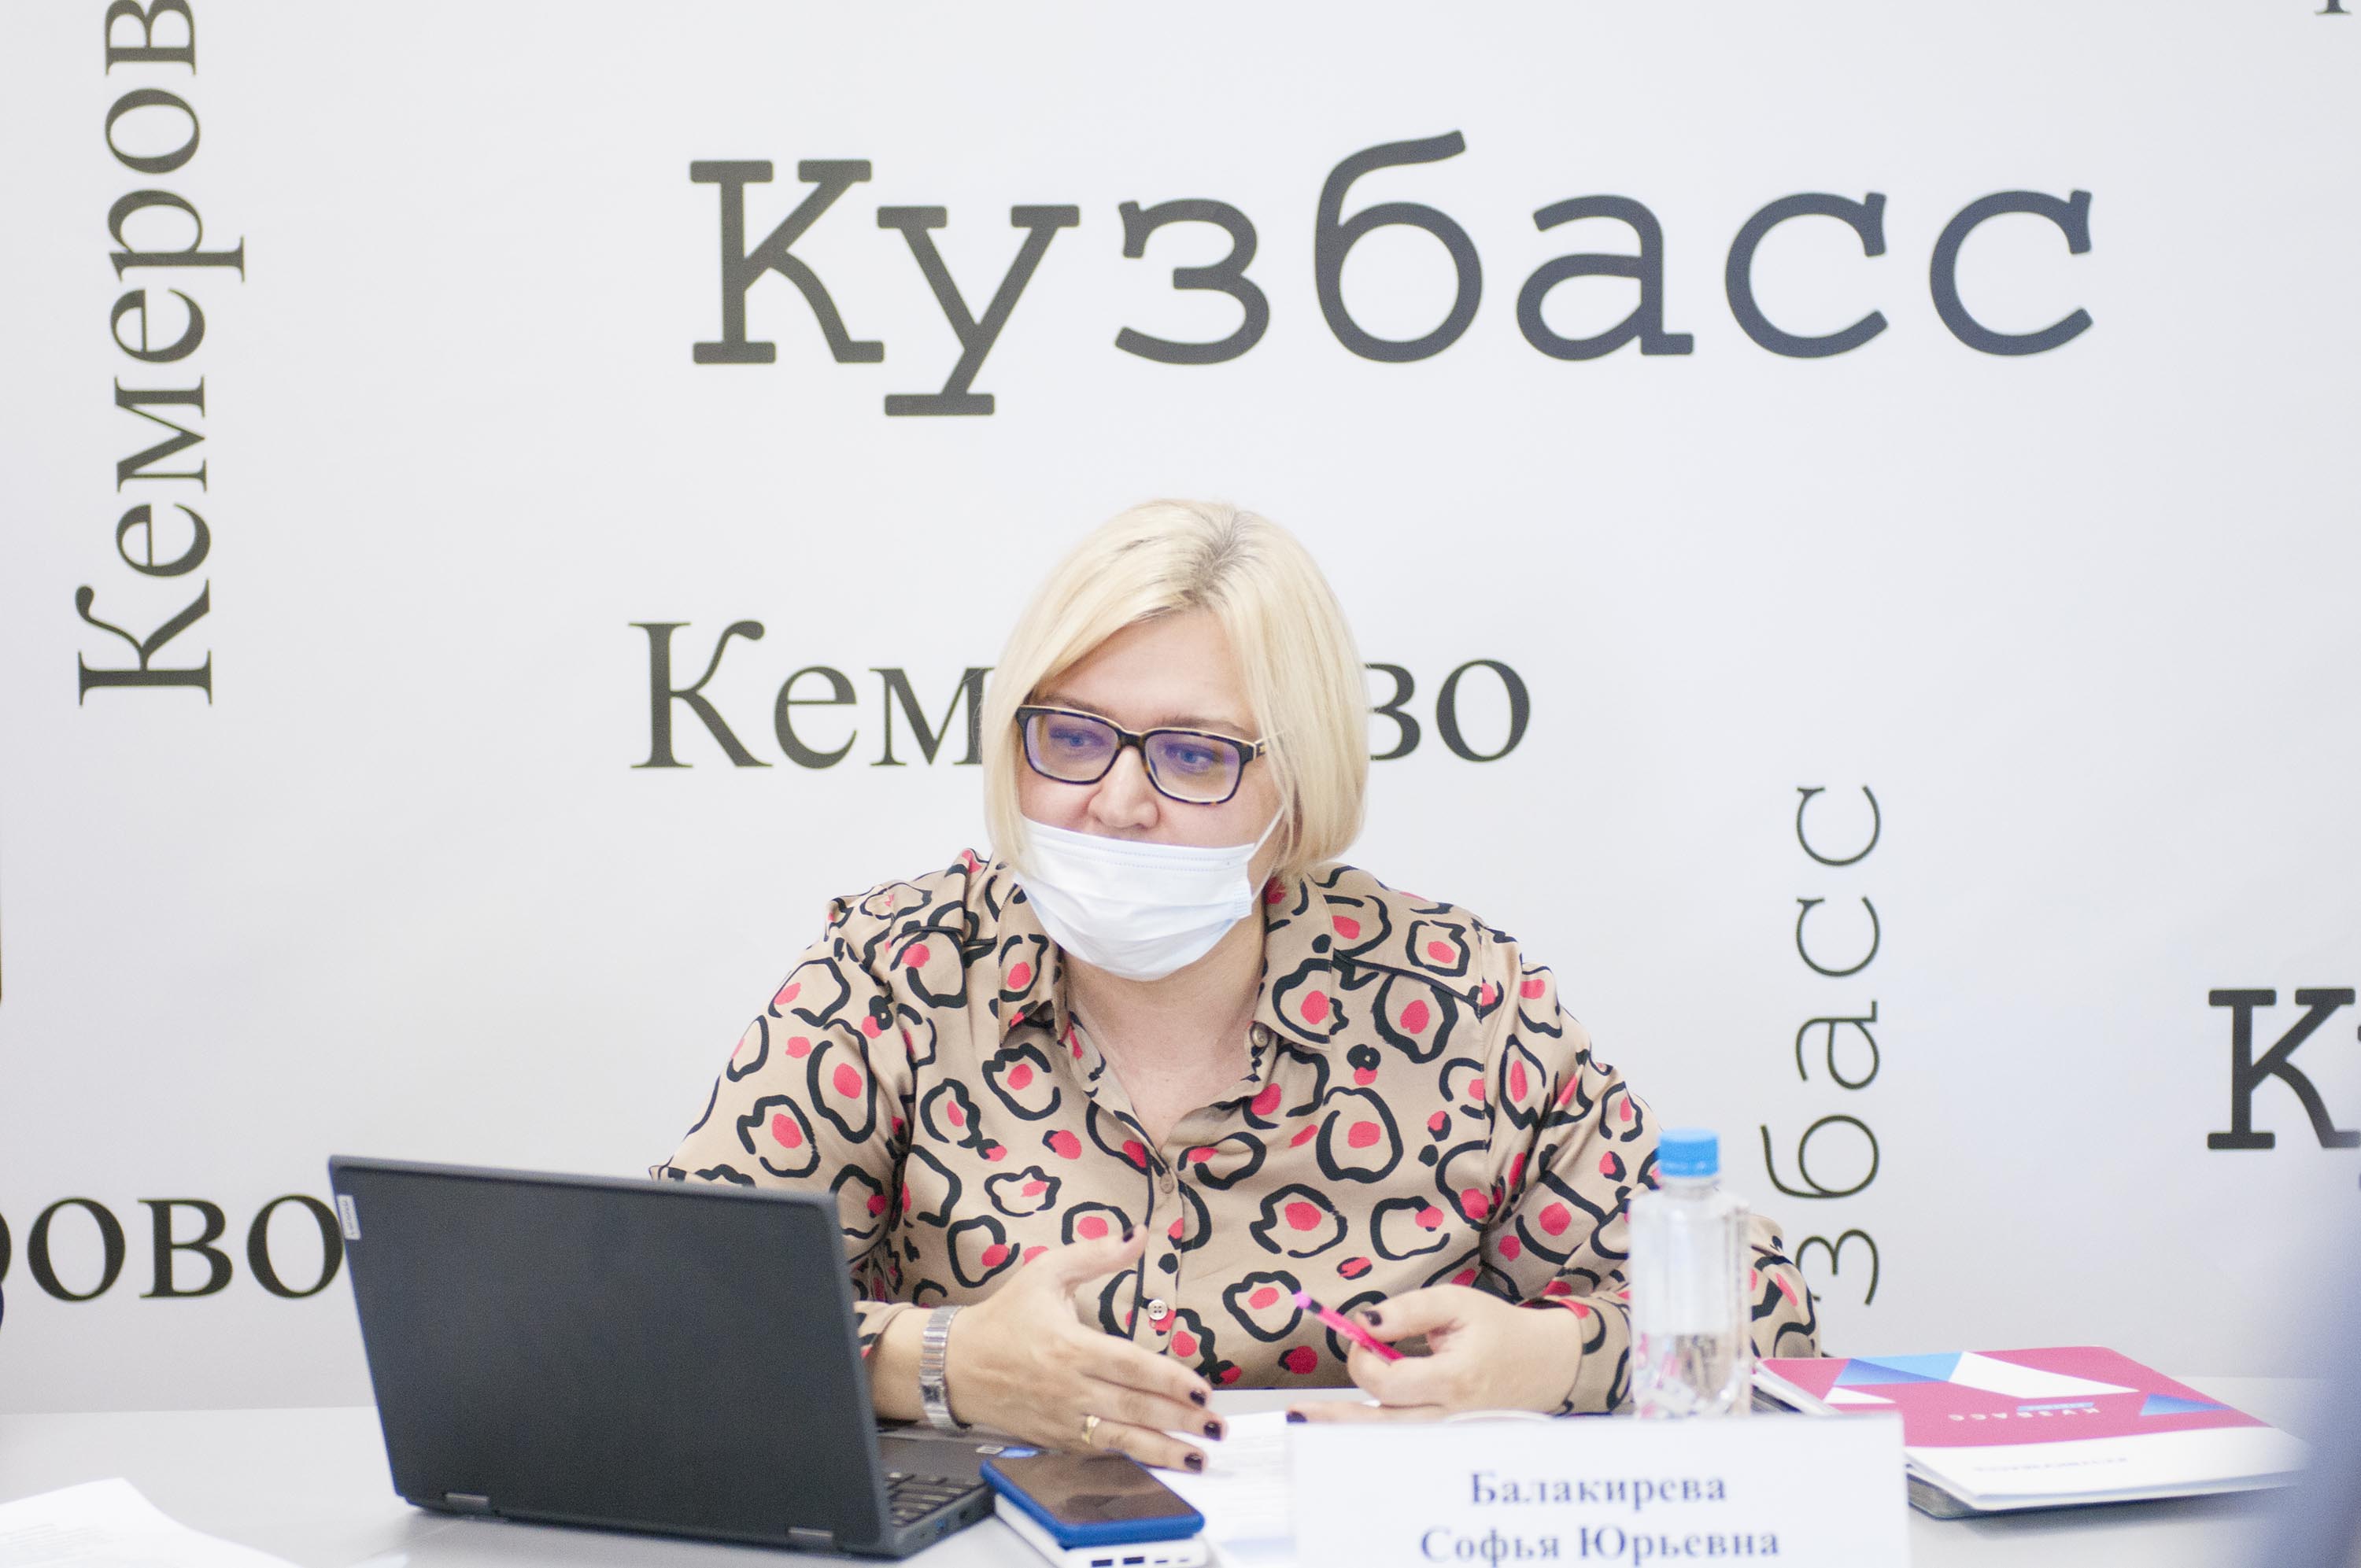 Министр образования и науки Кузбасса рассказала о проведении ГИА и выпускных на Всекузбасском родительском онлайн-собрании